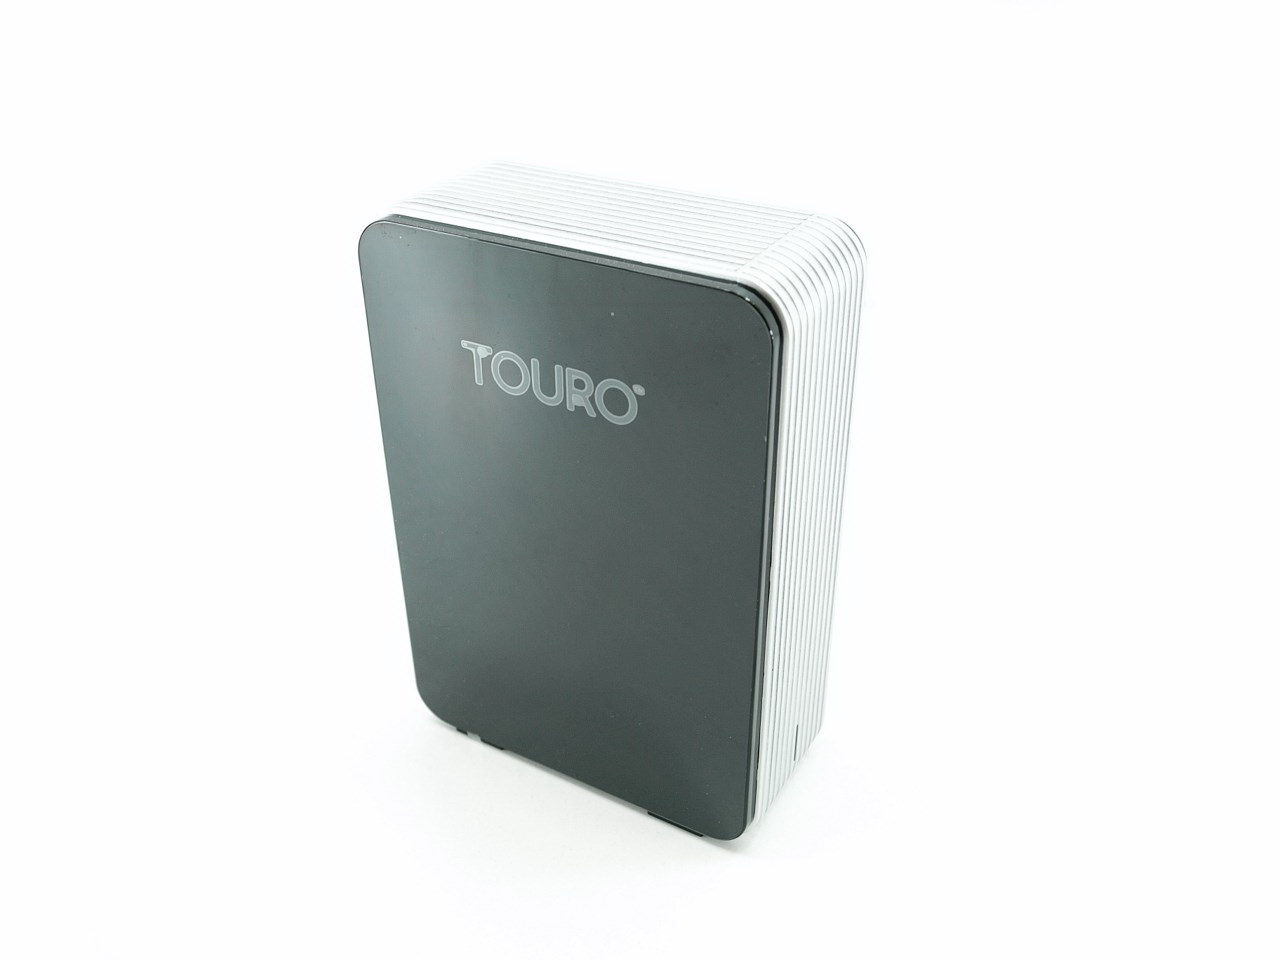 Hgst Touro Desk Pro 4tb Usb 3 0 External Hard Drive Review